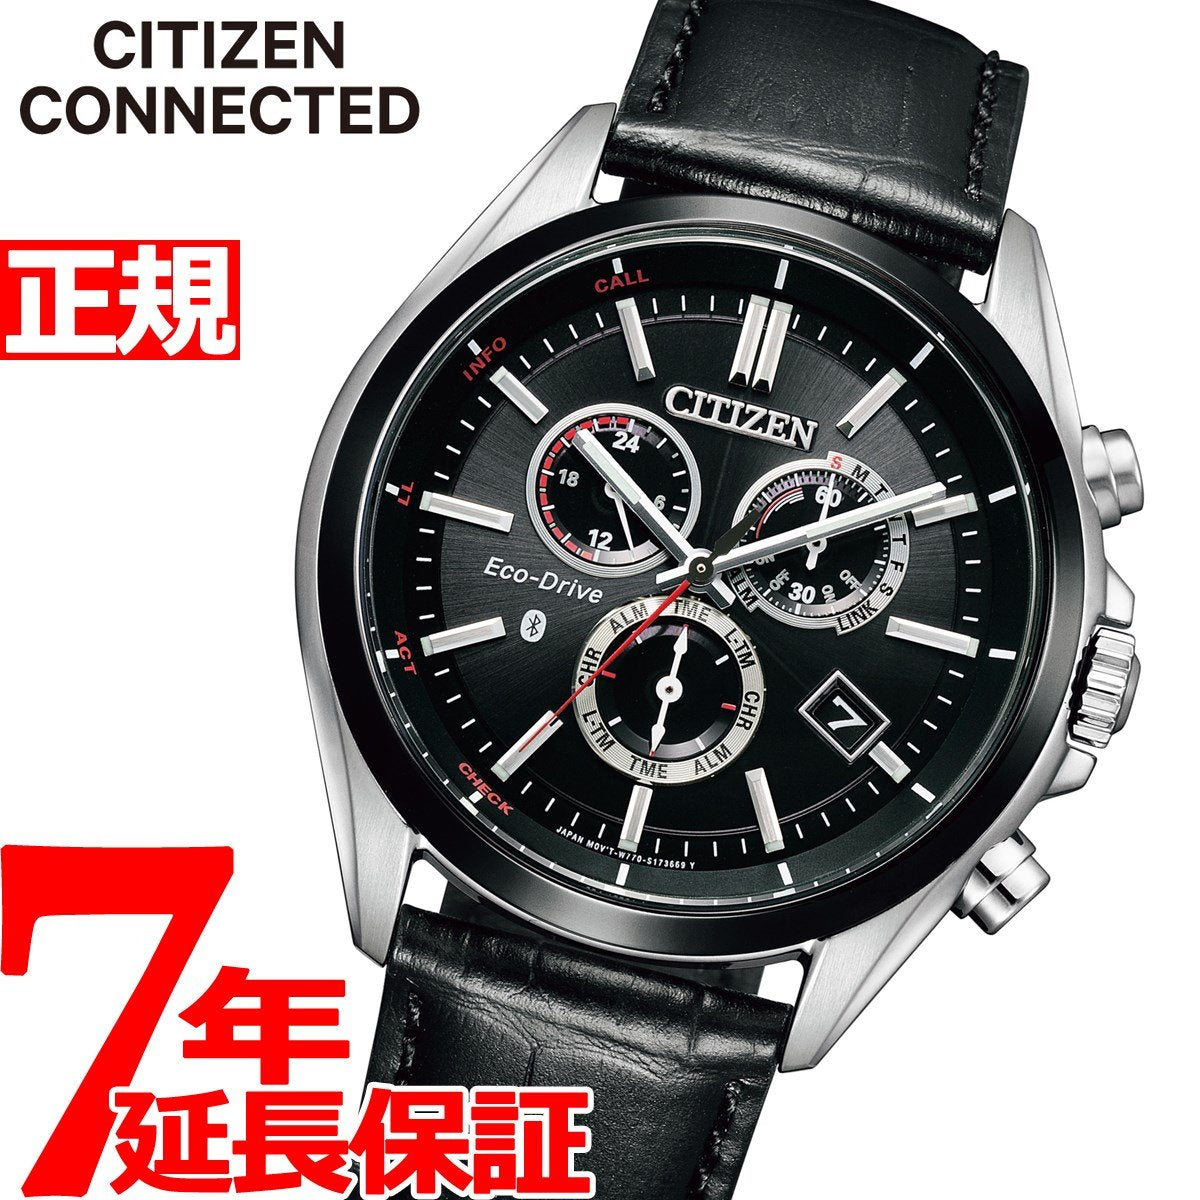 CITIZEN CONNECTEDメンズウォッチローカルタイム機能 - 腕時計(アナログ)